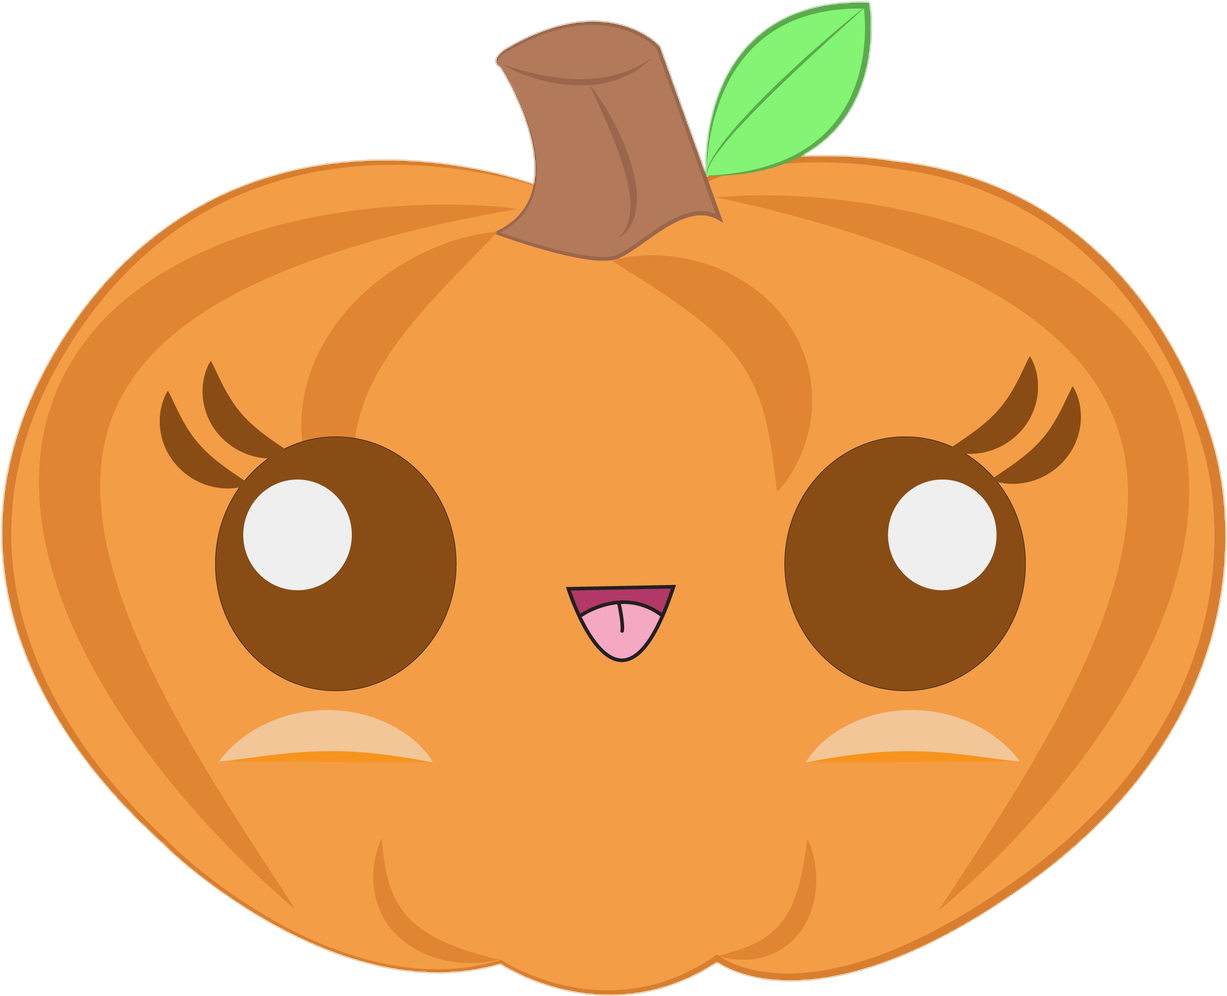 Zwd Halloween Monsters 06 - Cute Pumpkin (1280x1280)